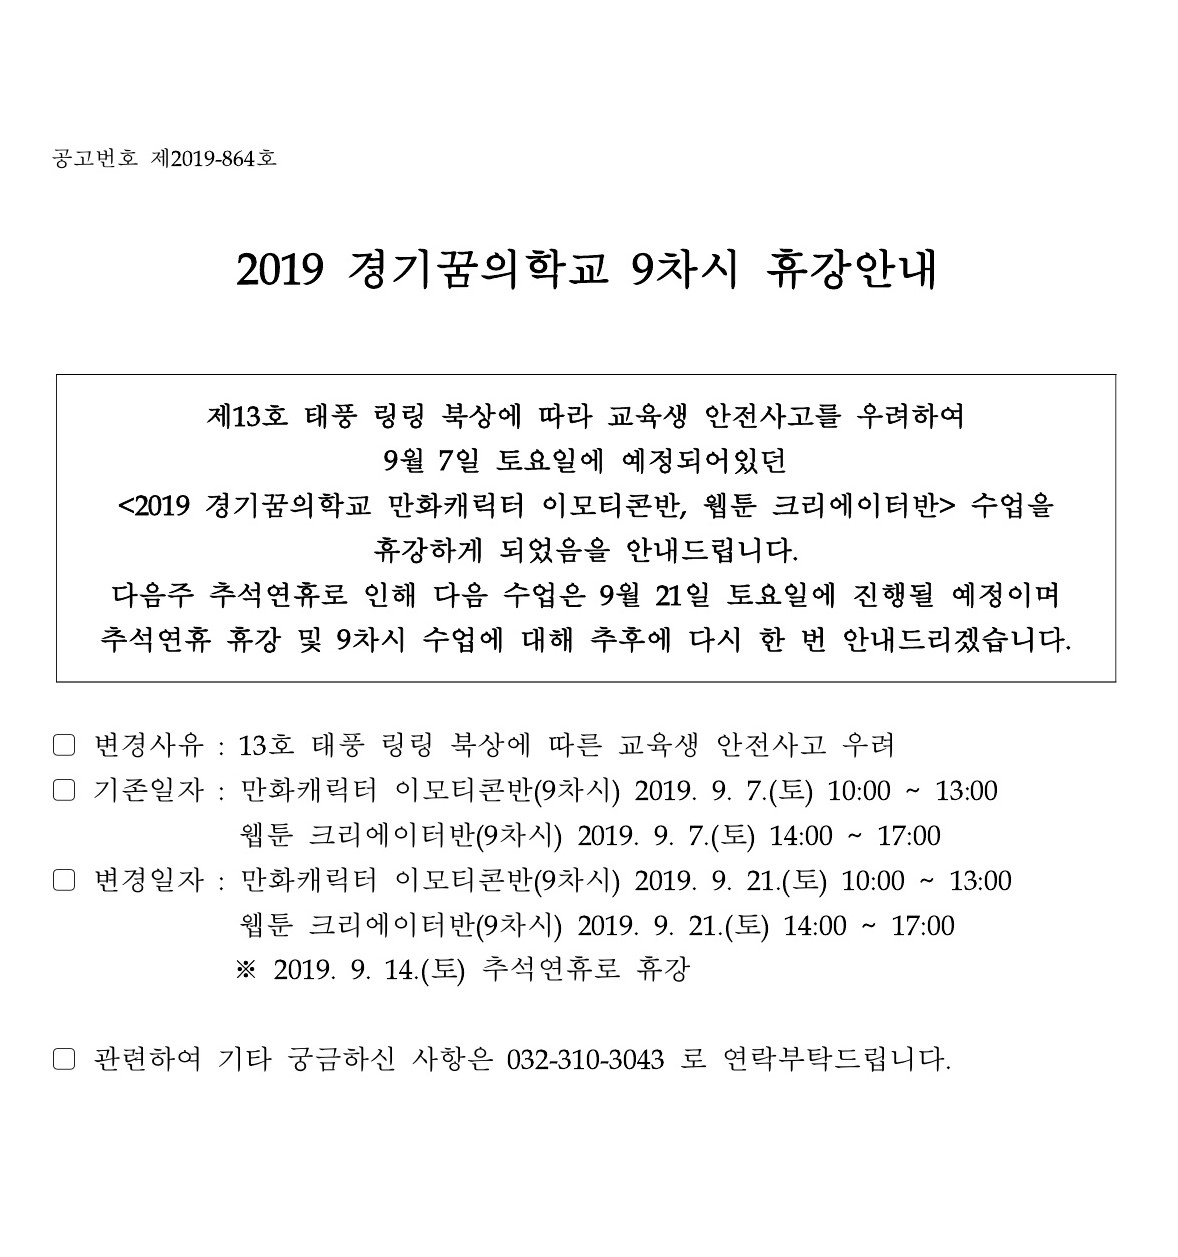 2019 경기꿈의학교 9차시 휴강안내